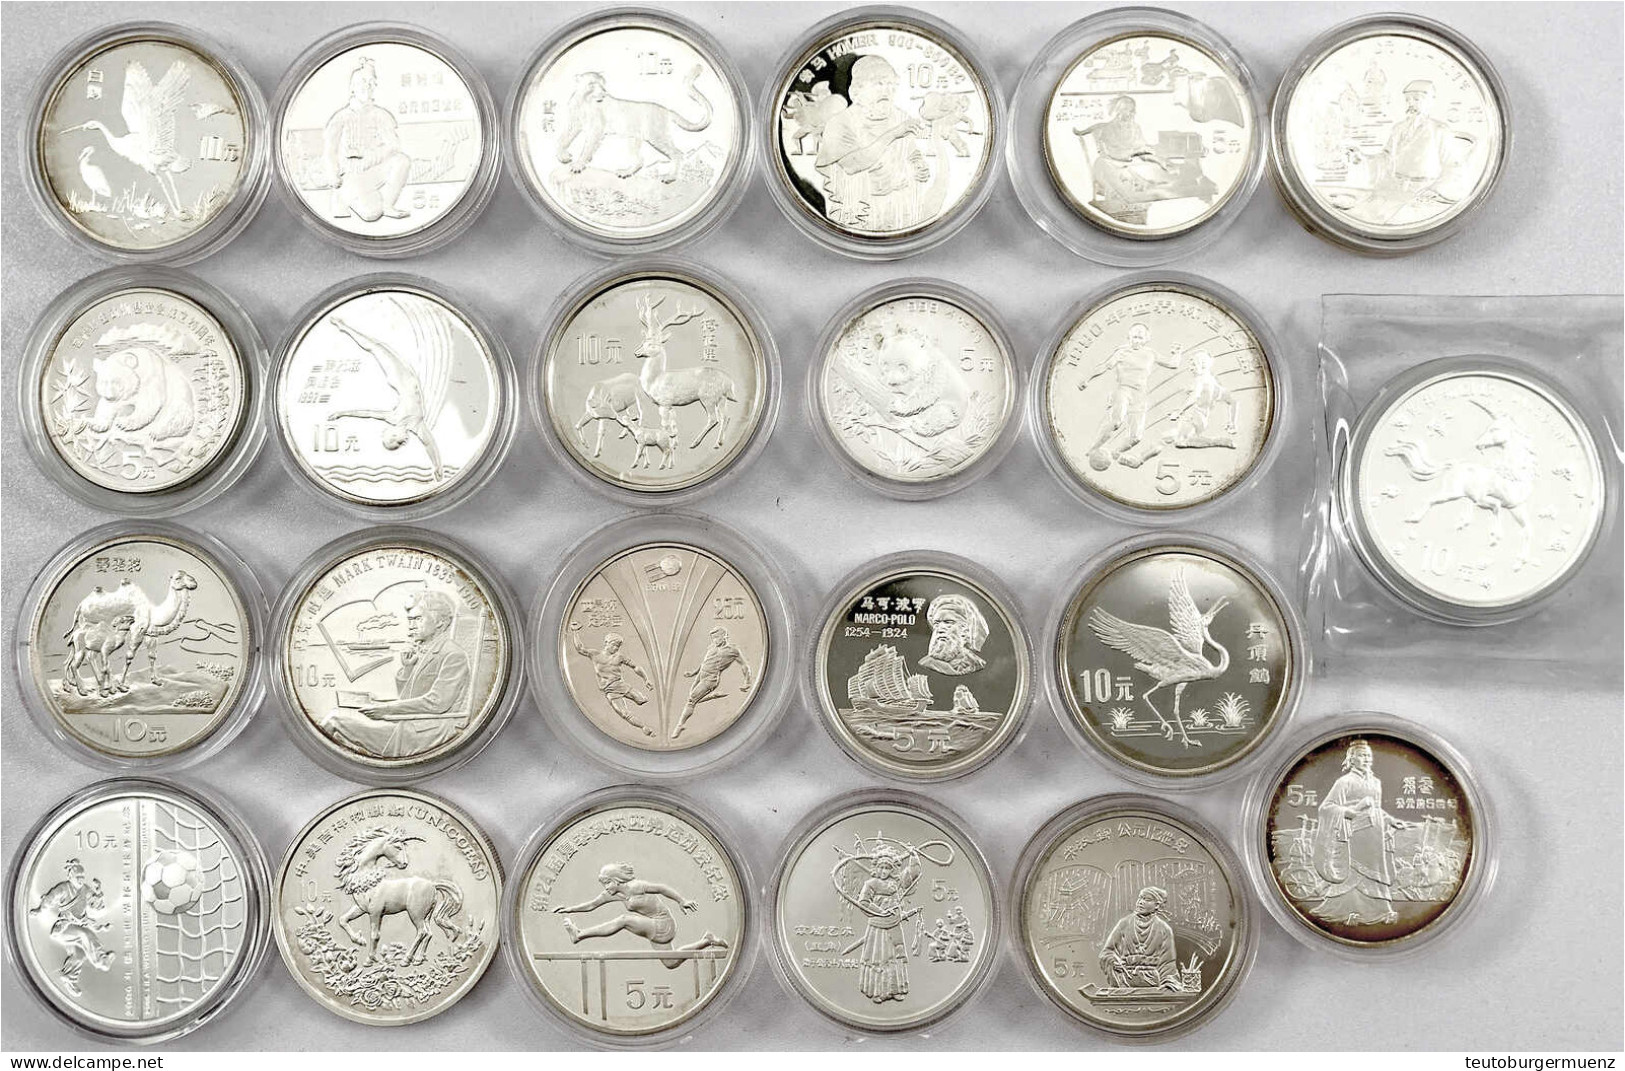 23 Silbergedenkmünzen Aus 1982 Bis 2005. 11 X 5 Yuan, 11 X 10 Yuan Und 1 X 25 Yuan, Meist Persönlichkeiten, Sportmotive  - Chine